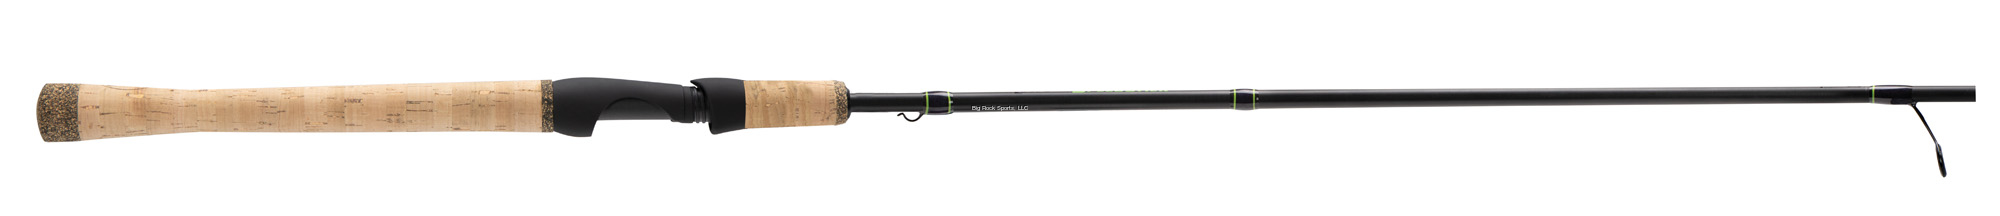 Lew's LSS76MLFS Speed Stick, IM8 Full Cork Handles, Walleye Spinning, 7'6  ML Fast Tip, 1 pc.